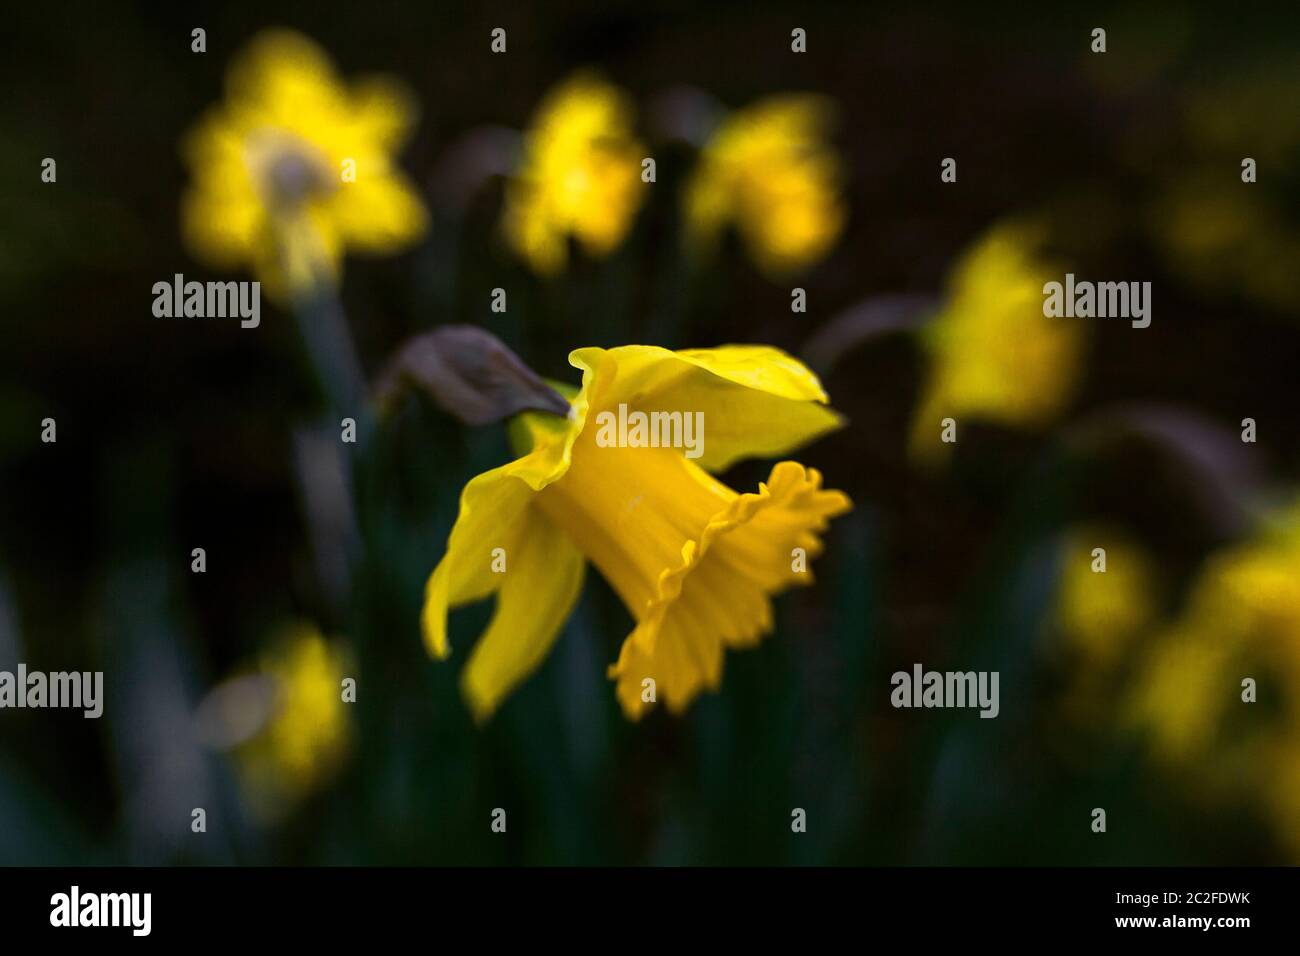 LB00162-00....WASHINGTON - immagine Lensbaby di un daffodil giallo. Foto Stock